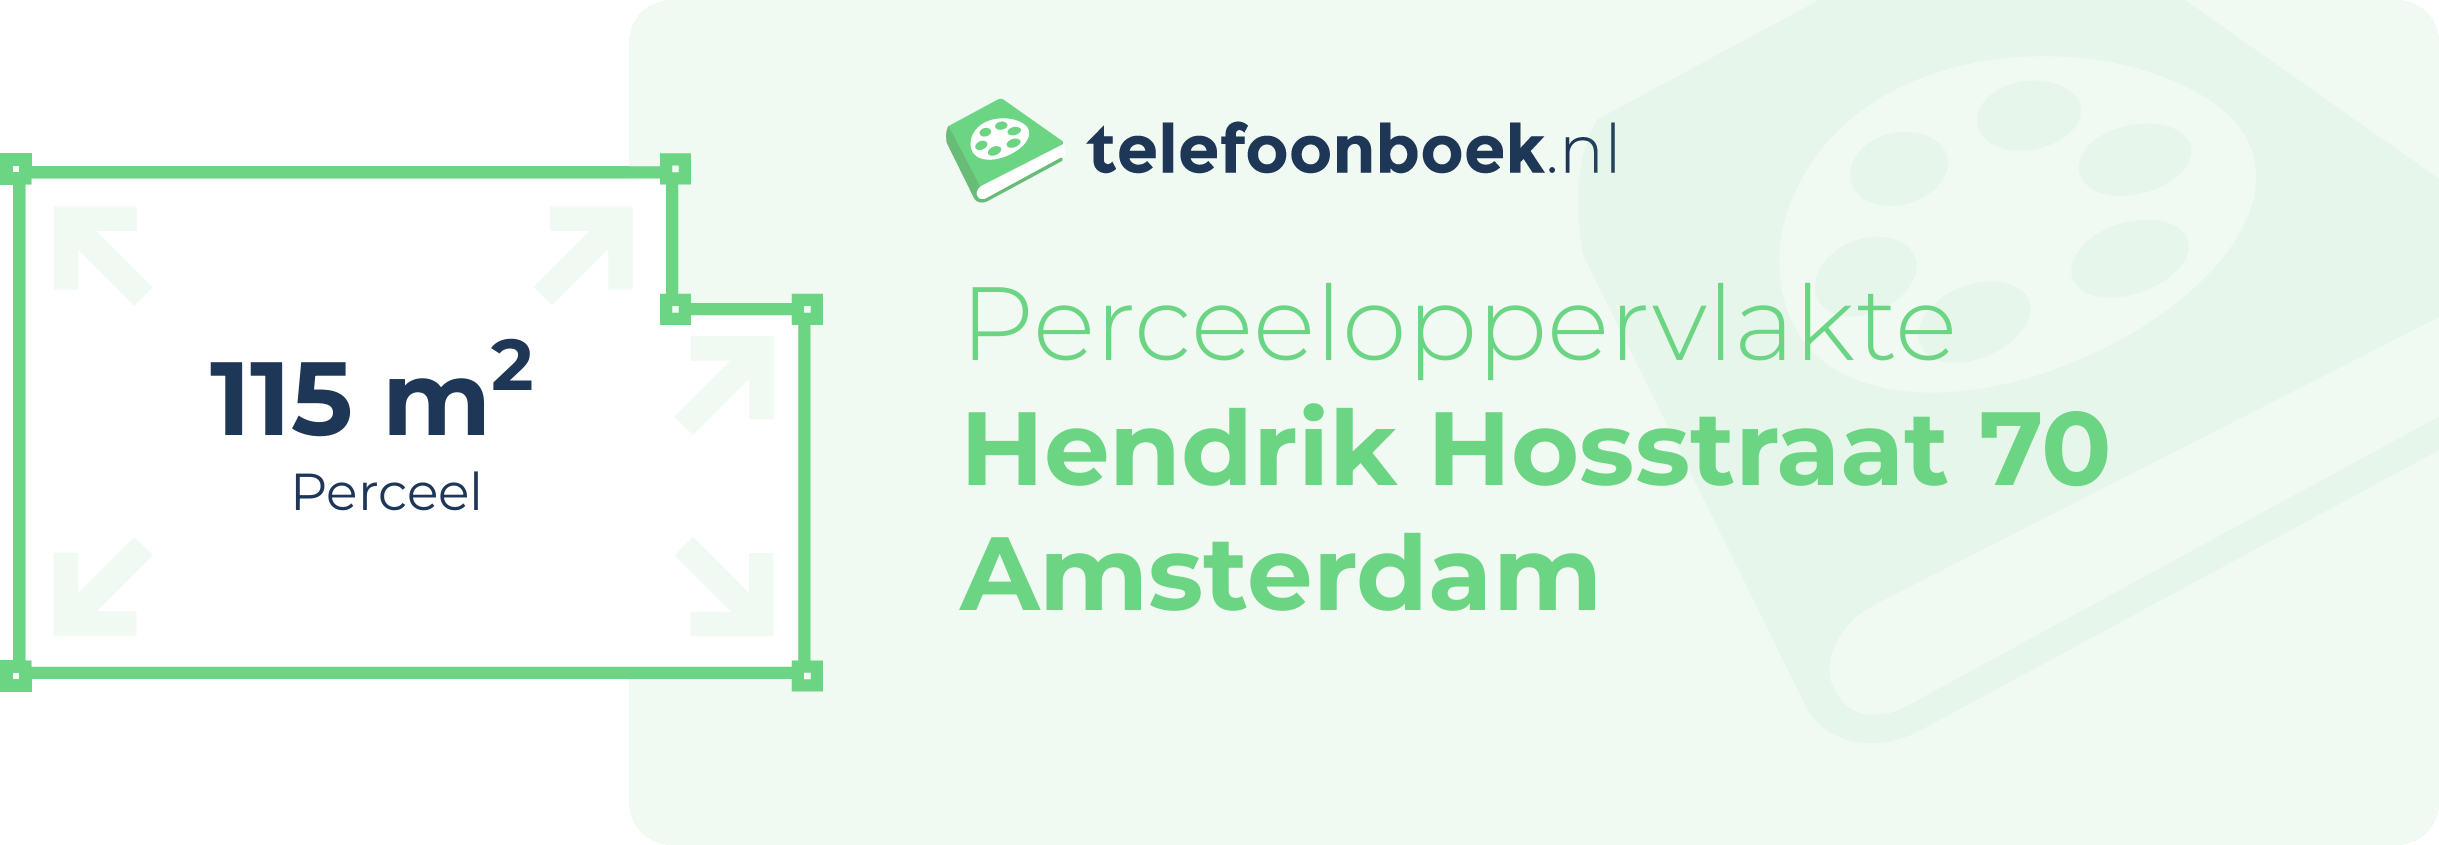 Perceeloppervlakte Hendrik Hosstraat 70 Amsterdam